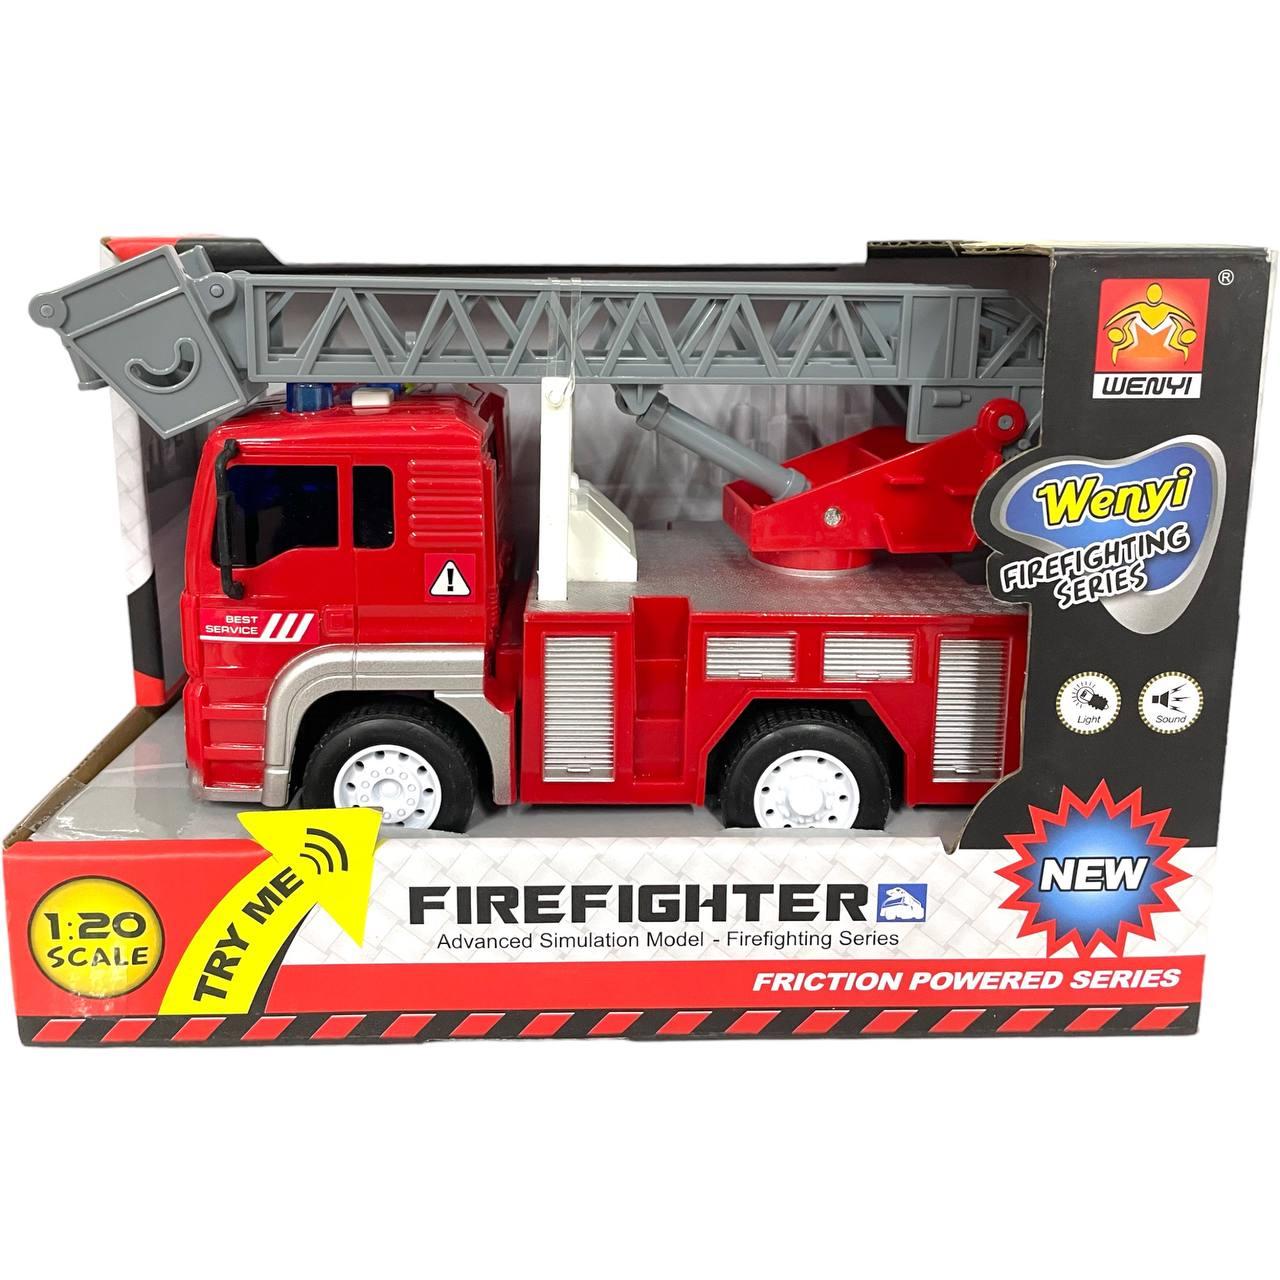 Wy550 ABC Пожарная спецтехника с 3 функциями Firefighter ( 3 вида разные) 23*15см